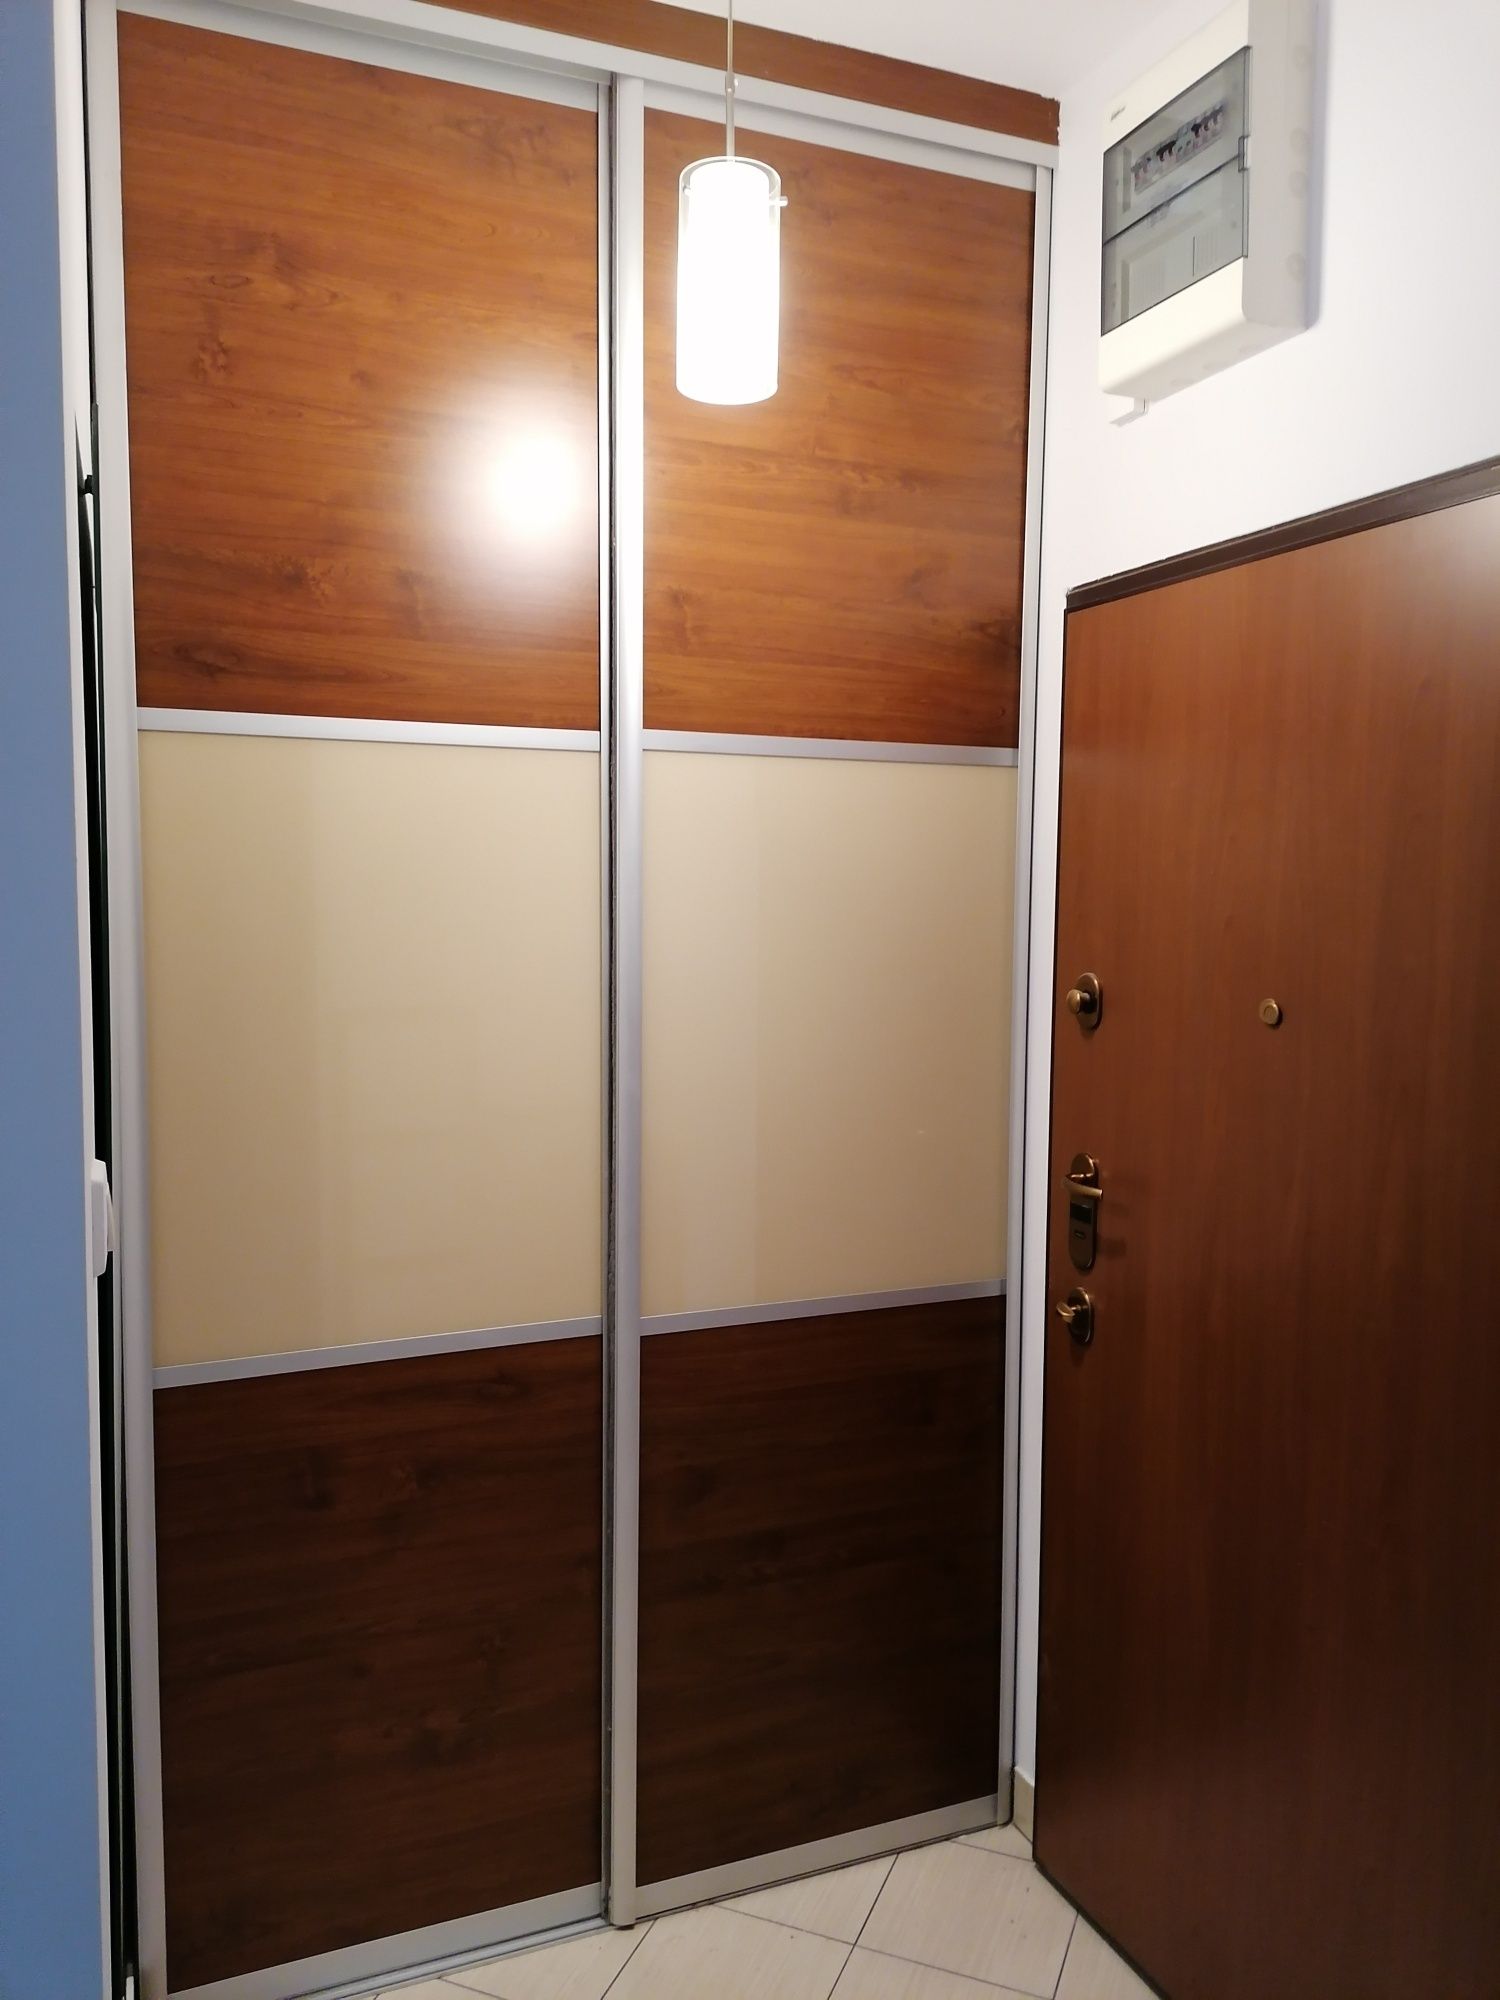 Drzwi do szafy suwane. 2 szt. Wymiary 276 x 73 cm.